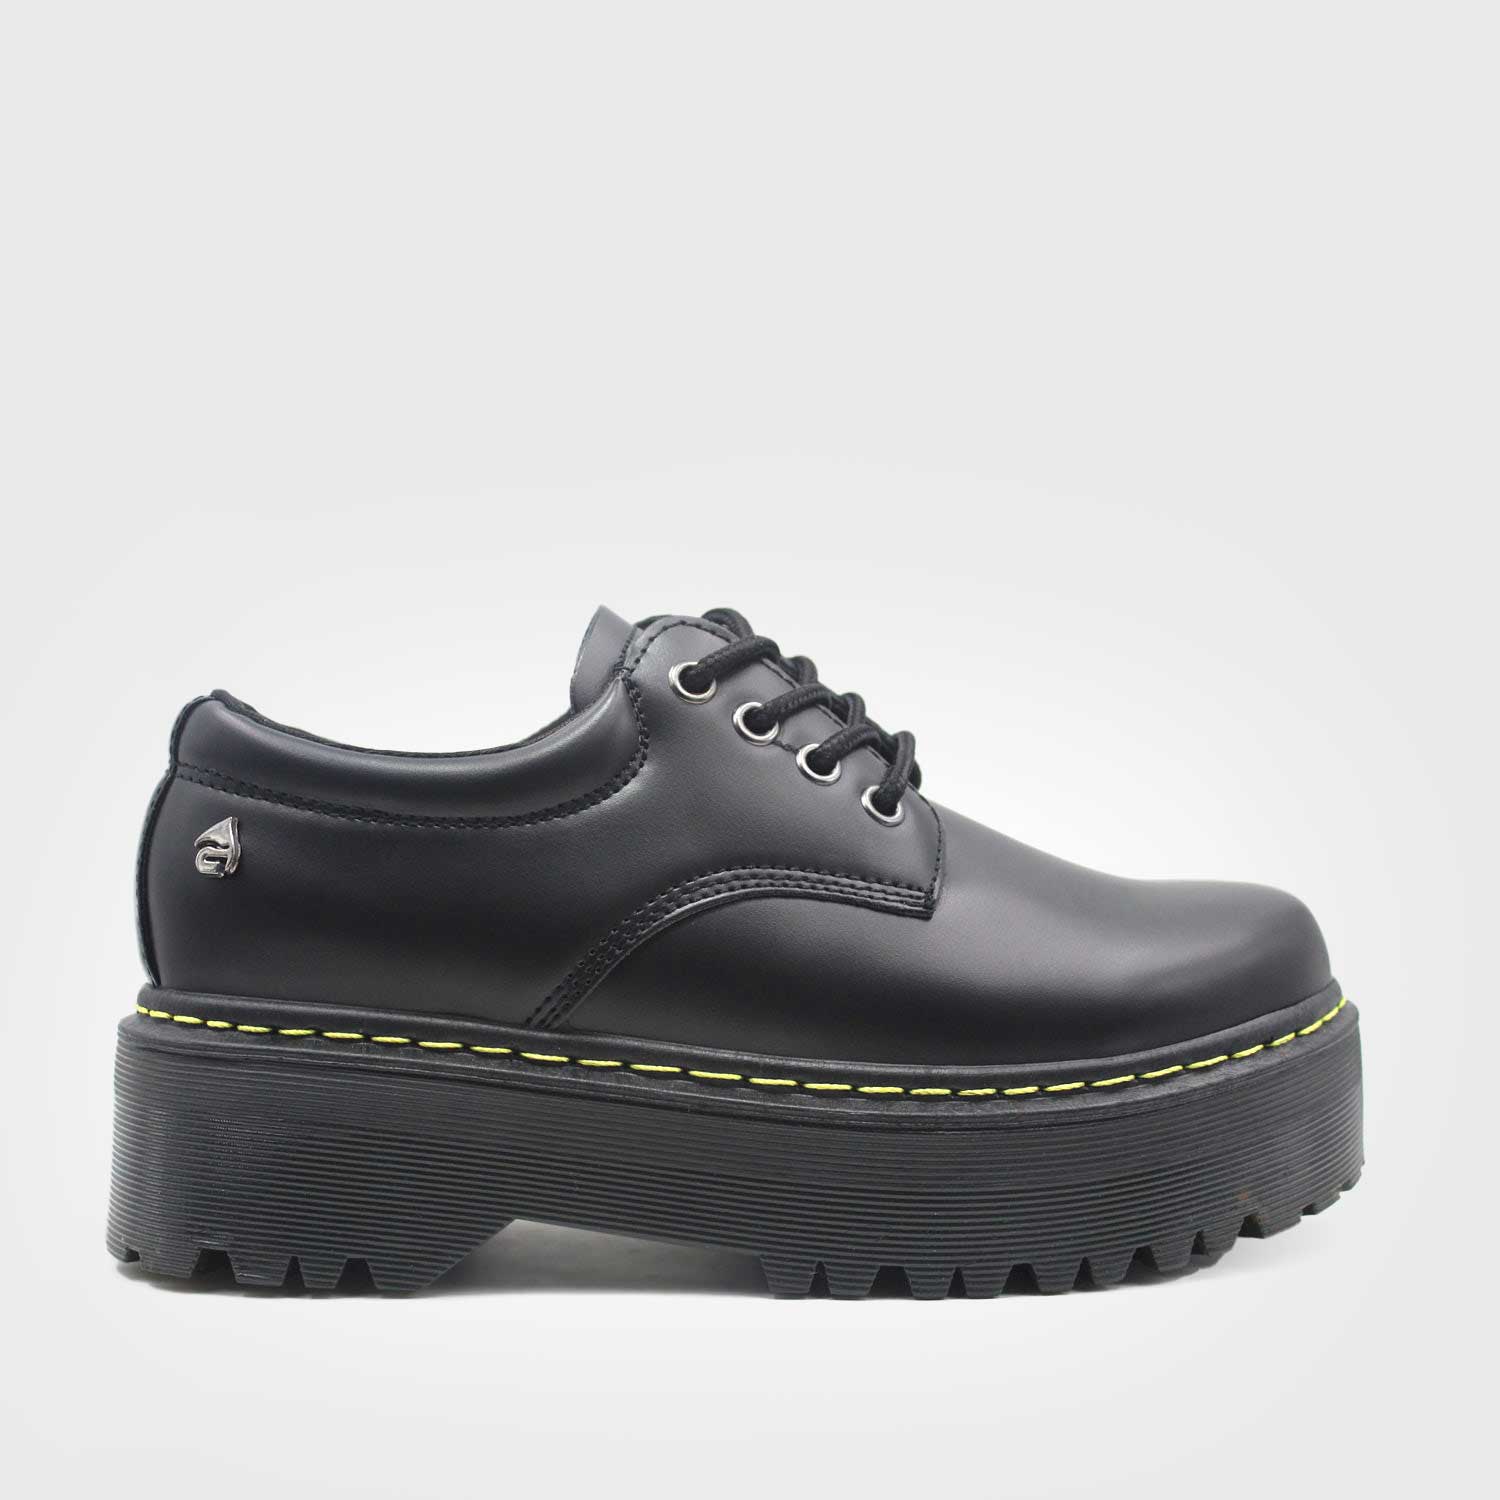 Zapato Negro Mujer C5916 - Gotta Chile